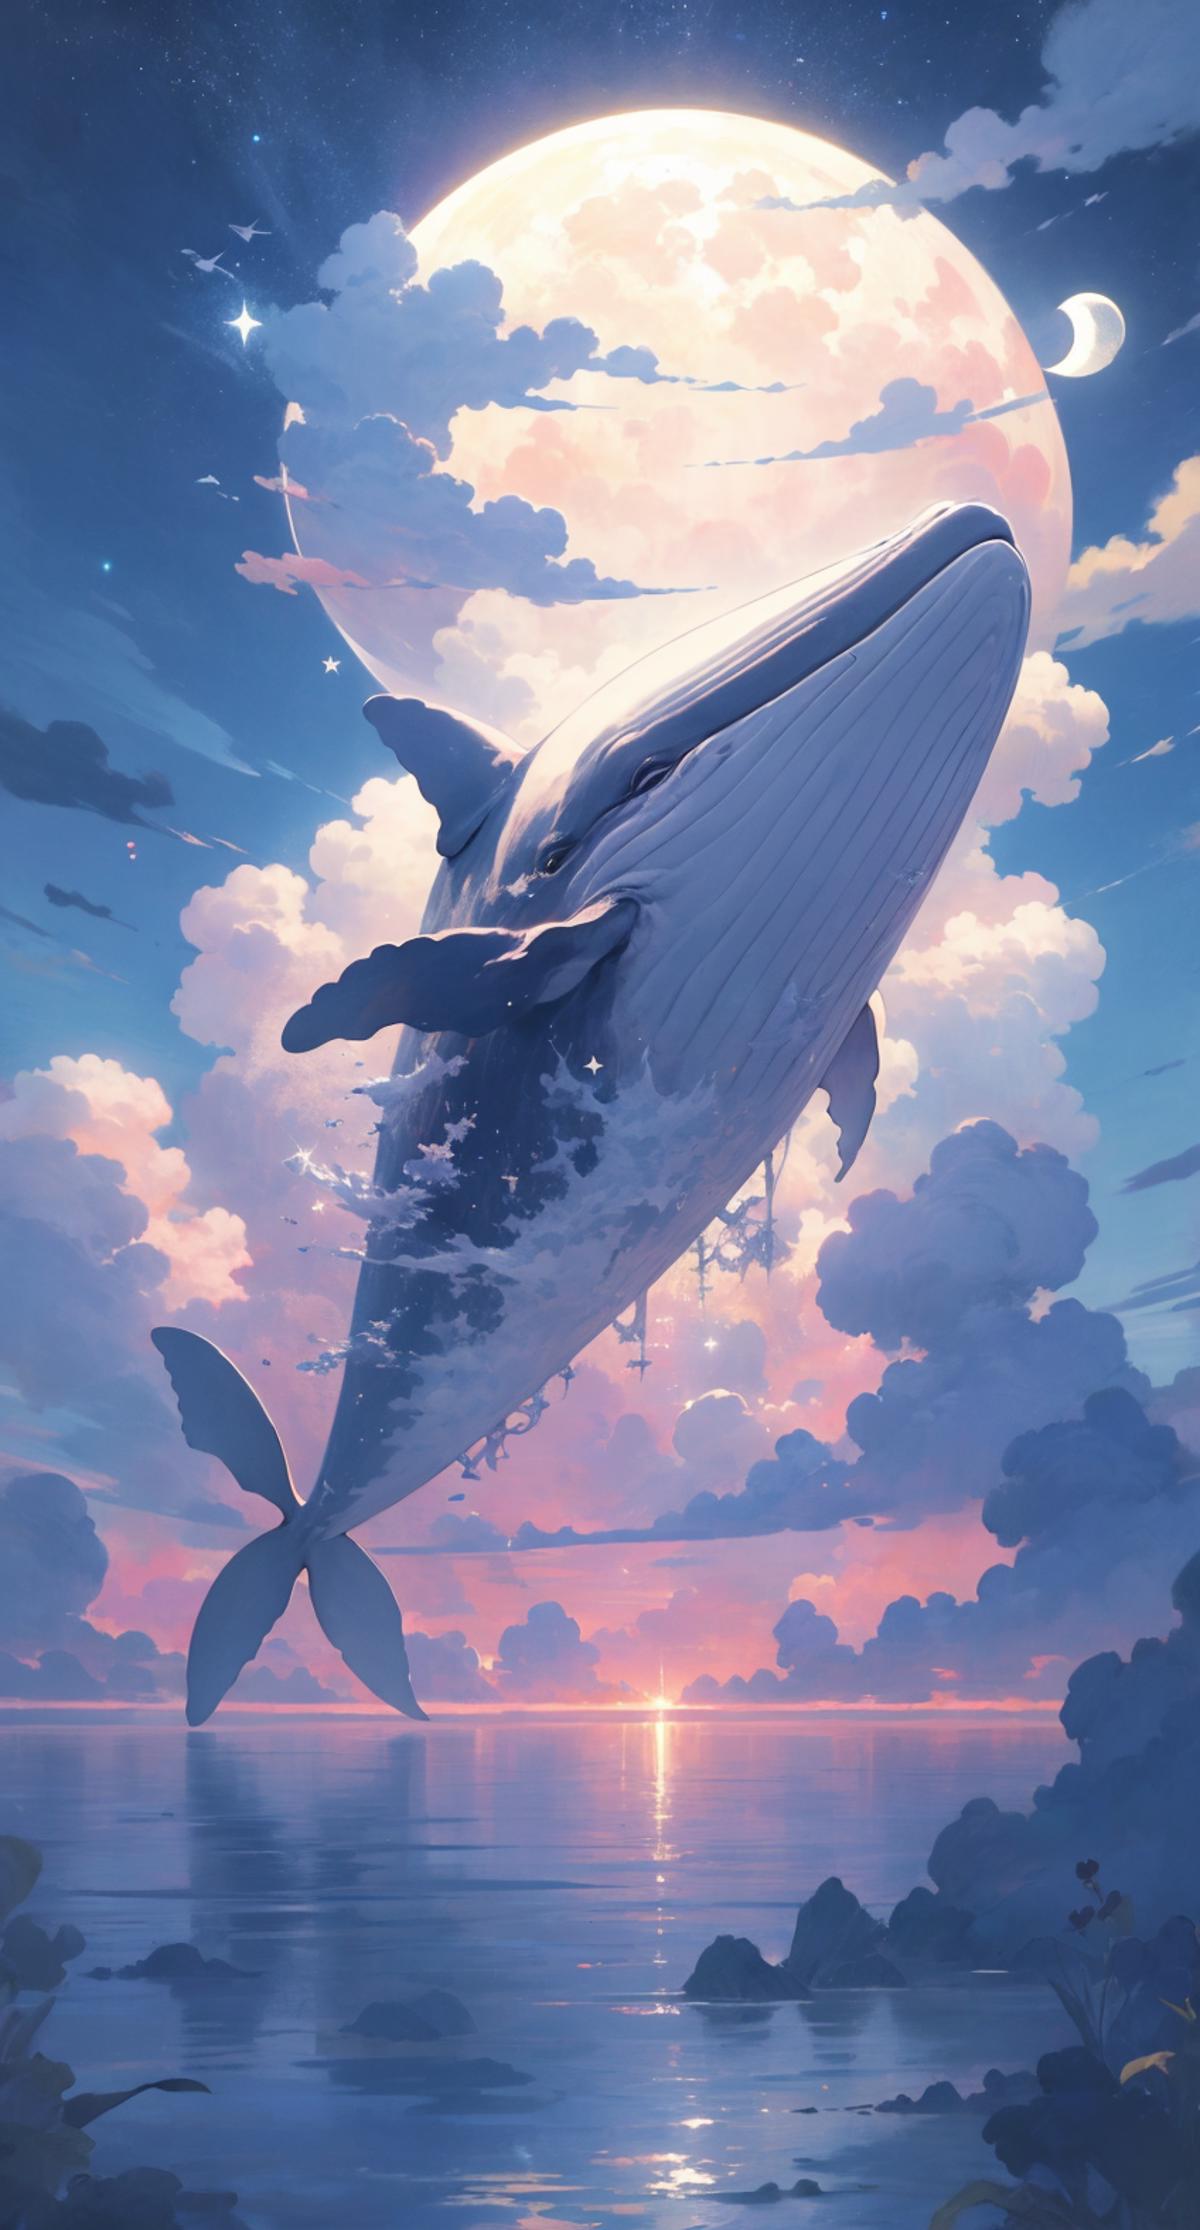 [LoRa] Cloudwhale / 雲鯨 Concept image by L_A_X